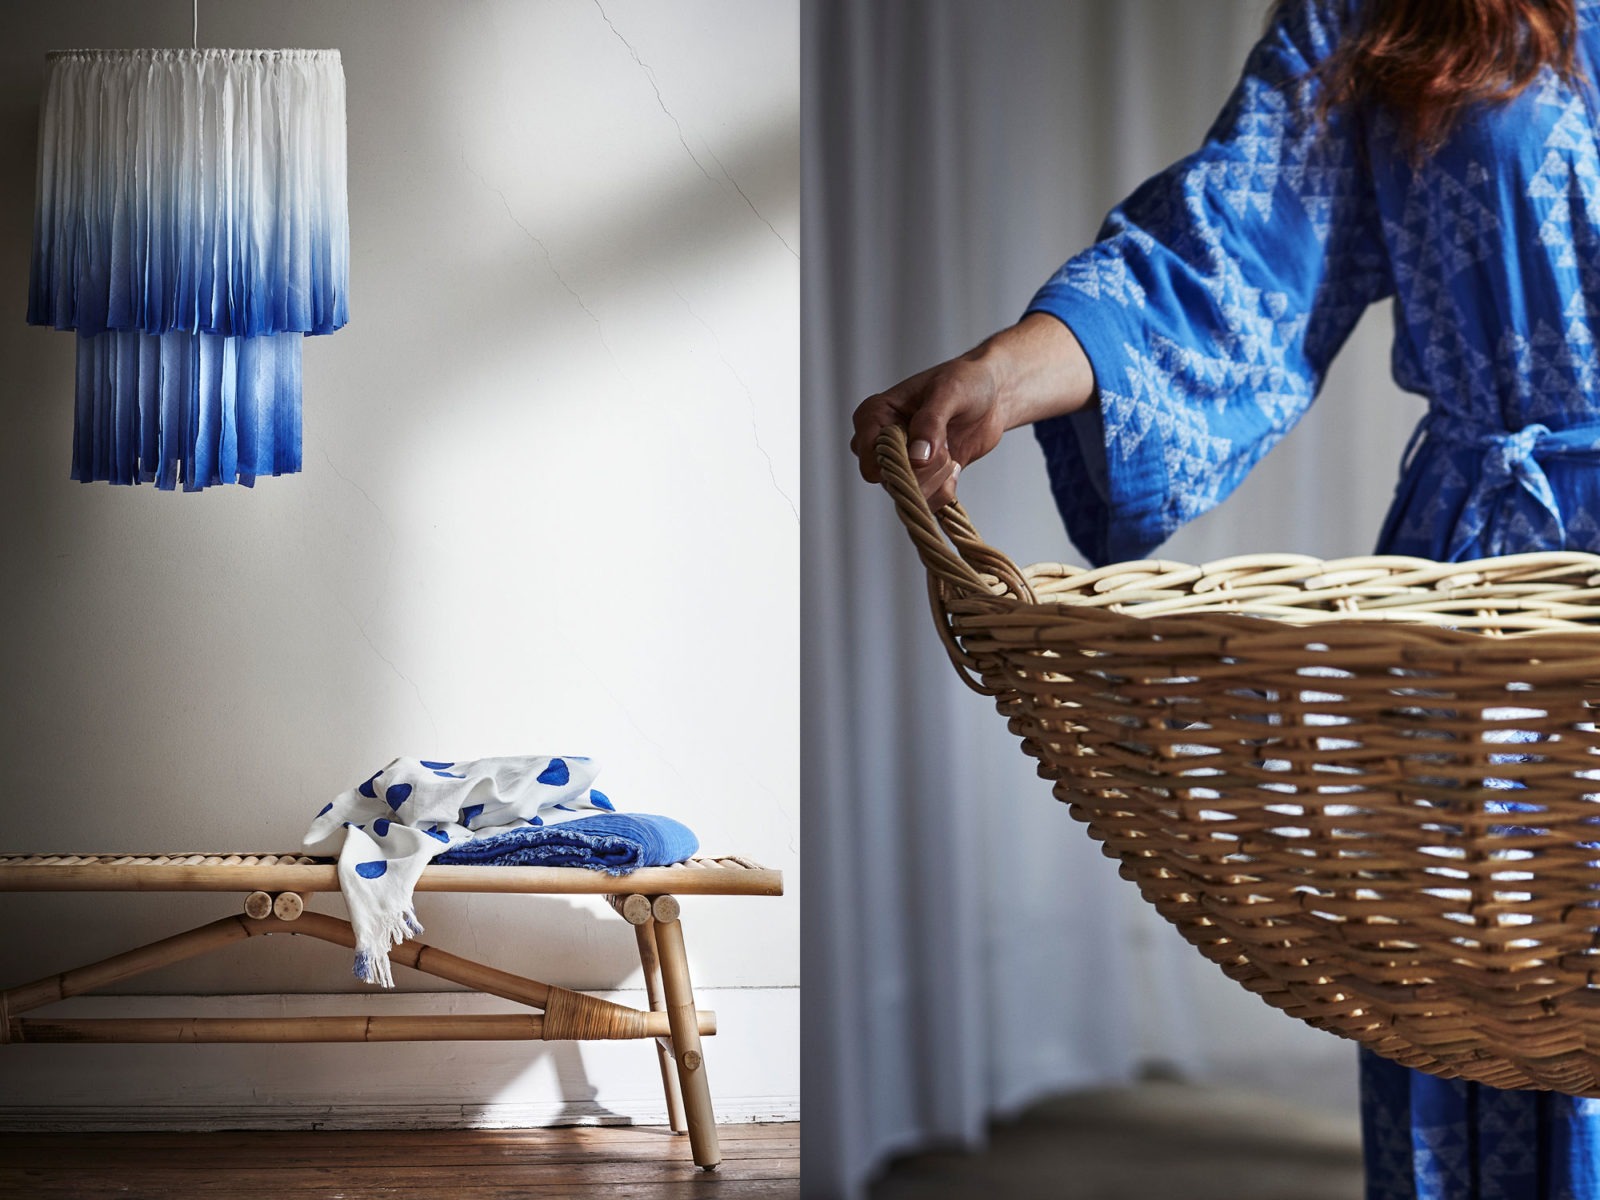 Hängande lampa av batikfärgat blåvitt tyg över rottingbord. Kvinna i blåvit morgonrock håller i stor flätad korg.